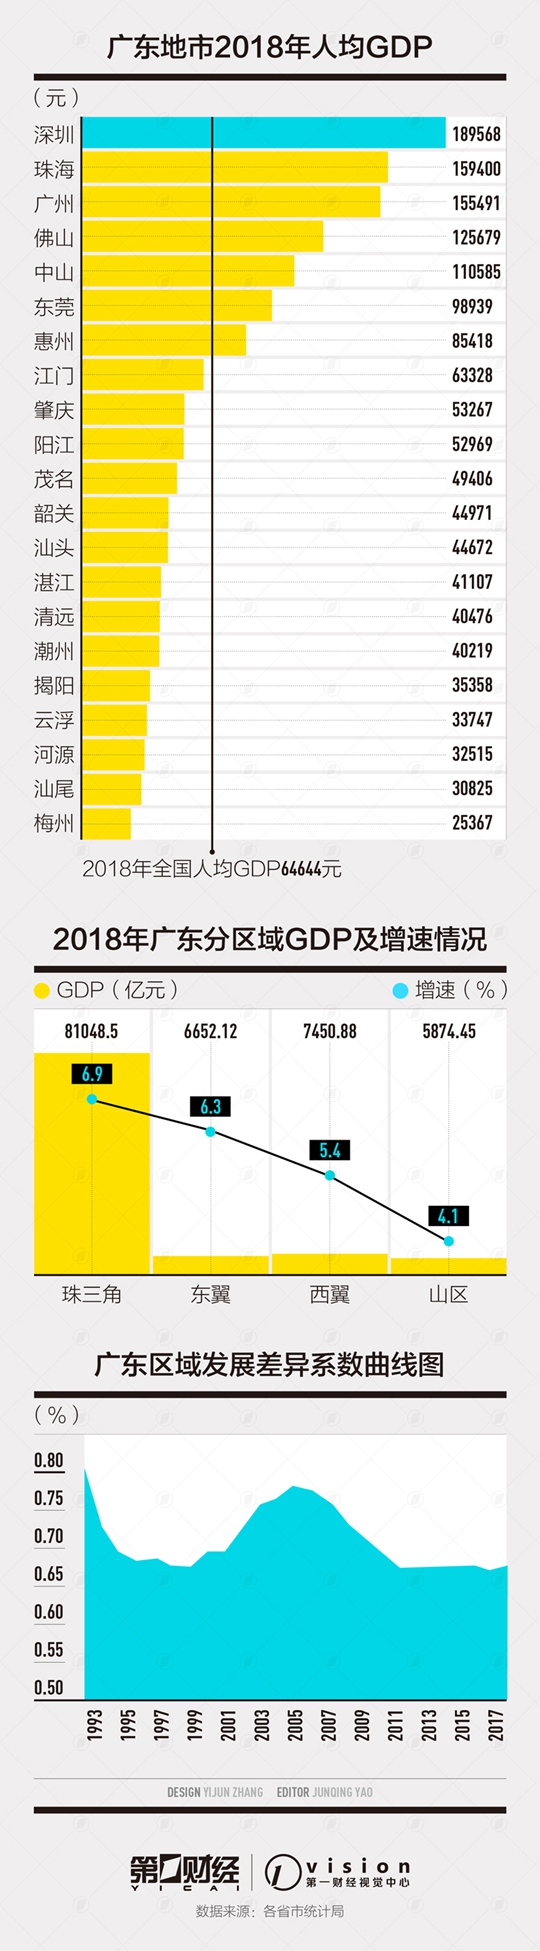 东部5省均衡度：广东2/3地市人均GDP低于全国